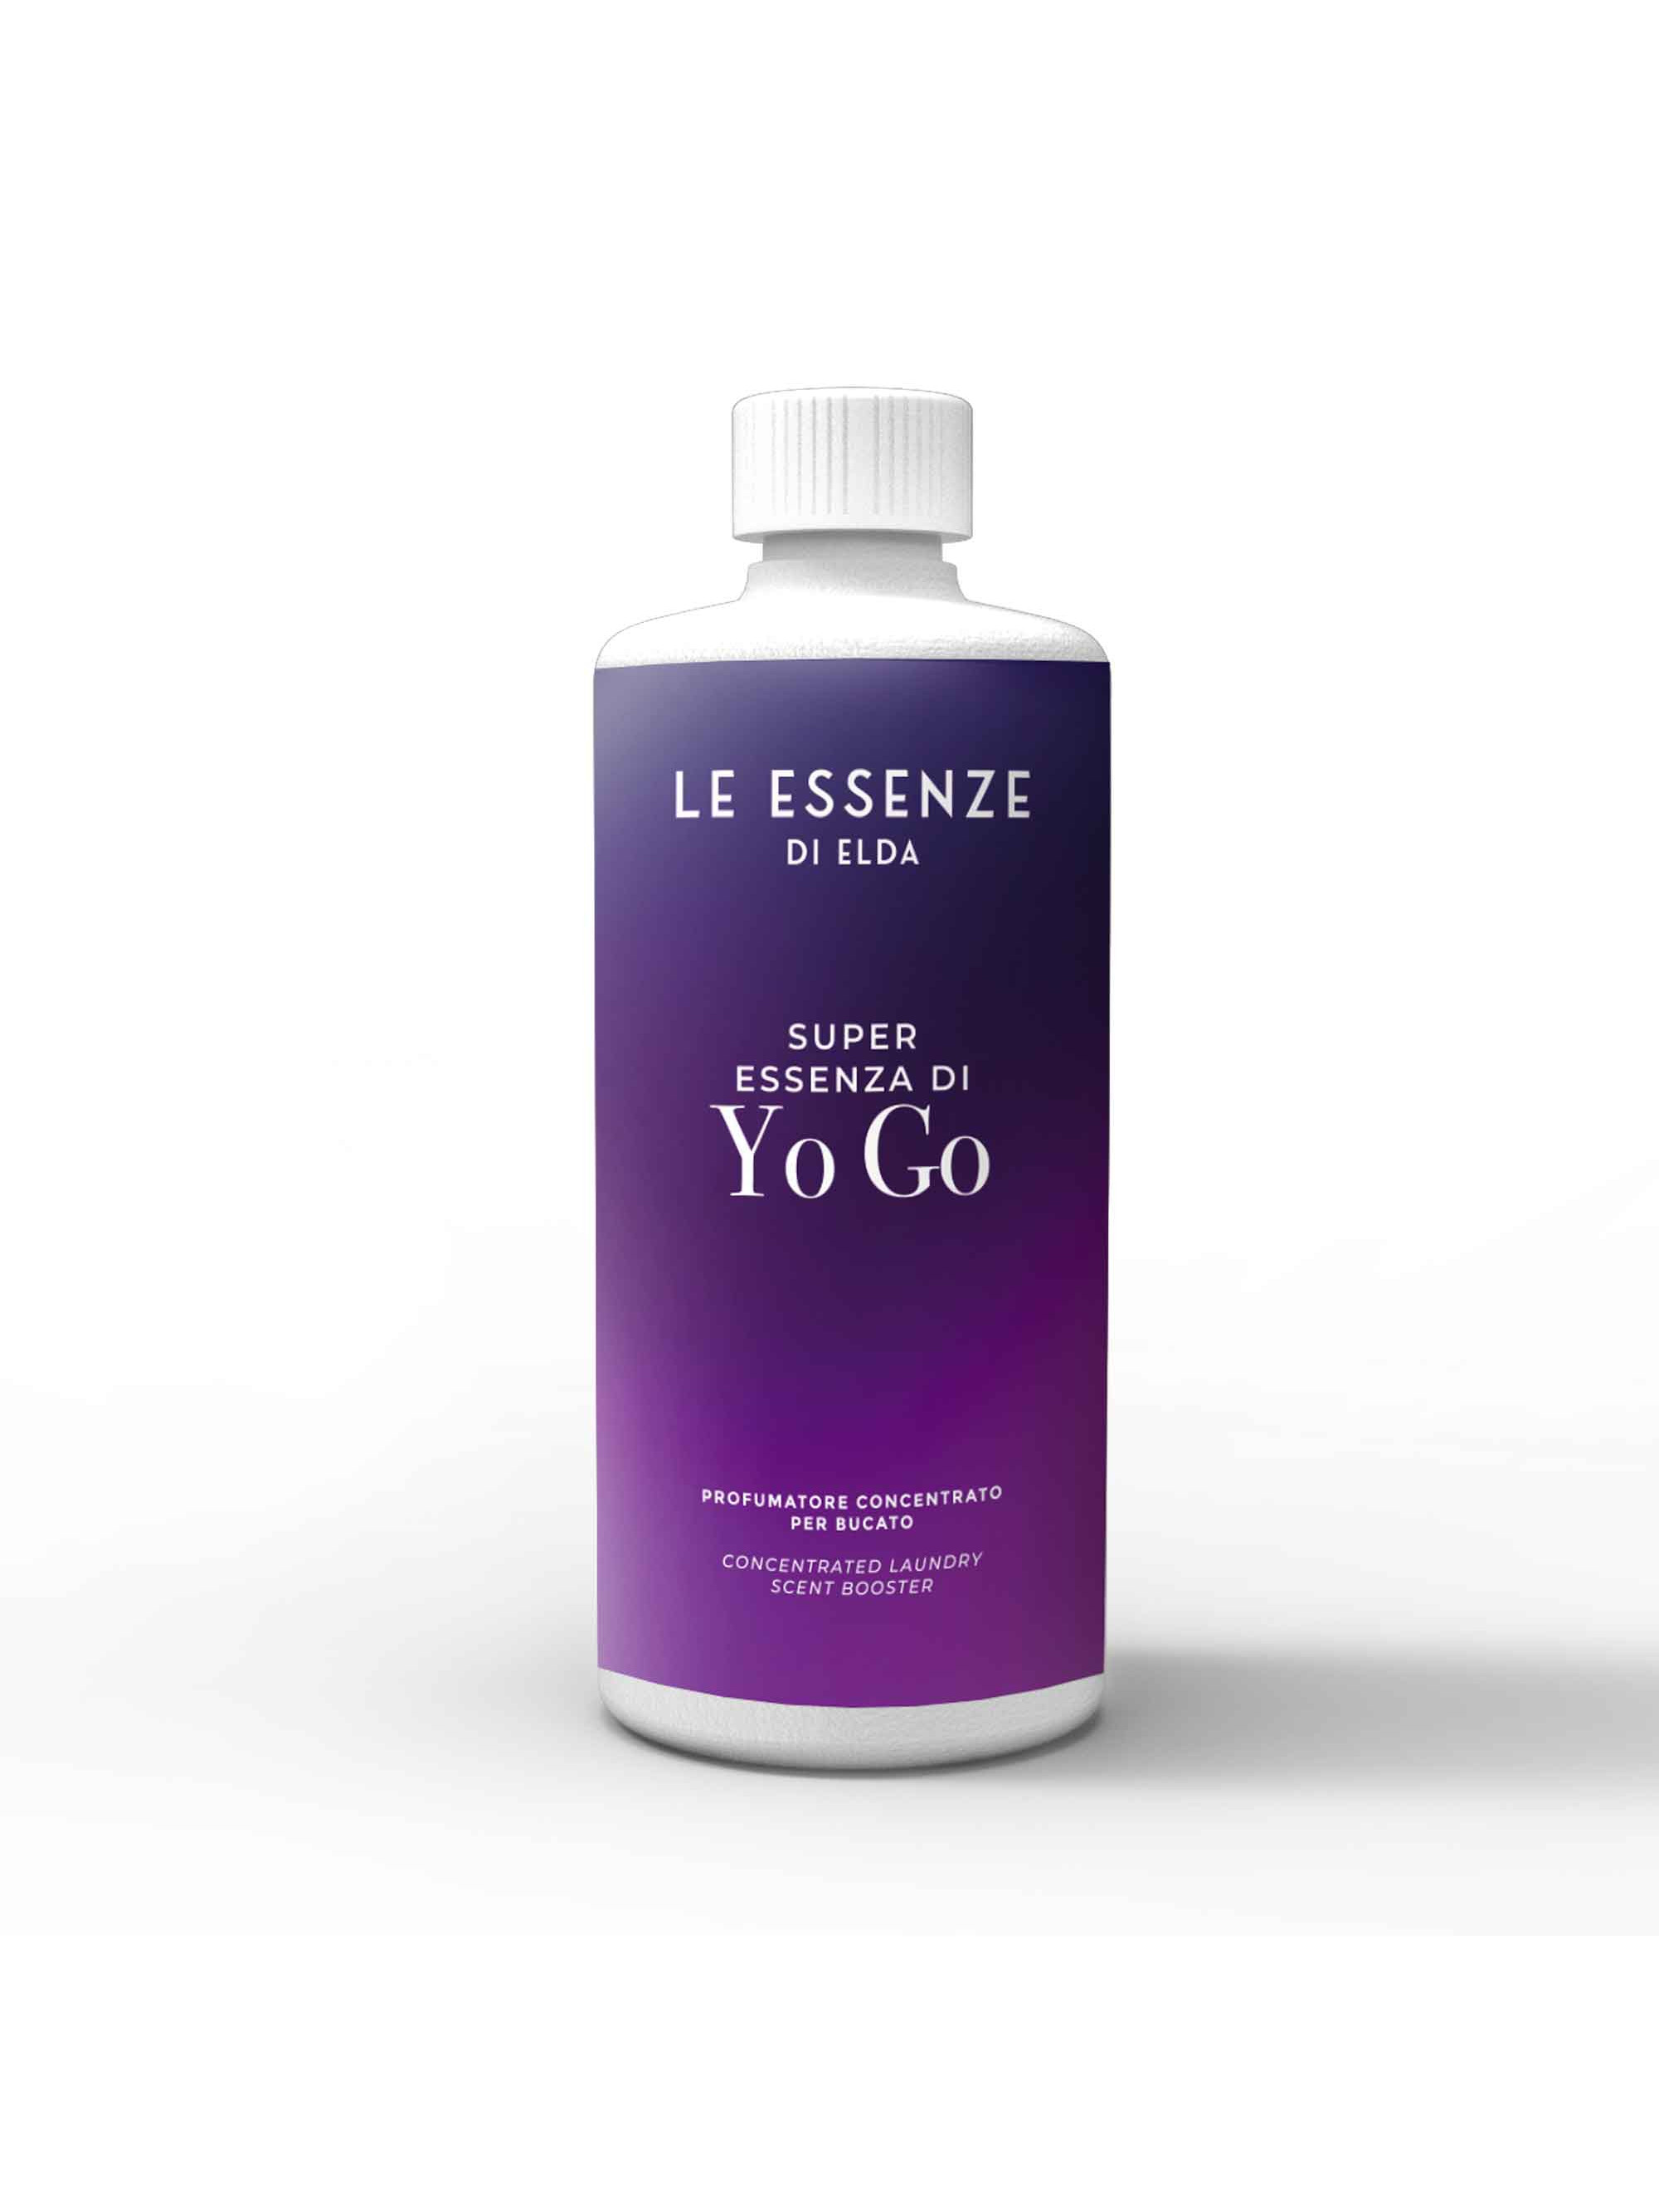 Essenza Yo Go - 500 ml laundry perfumer